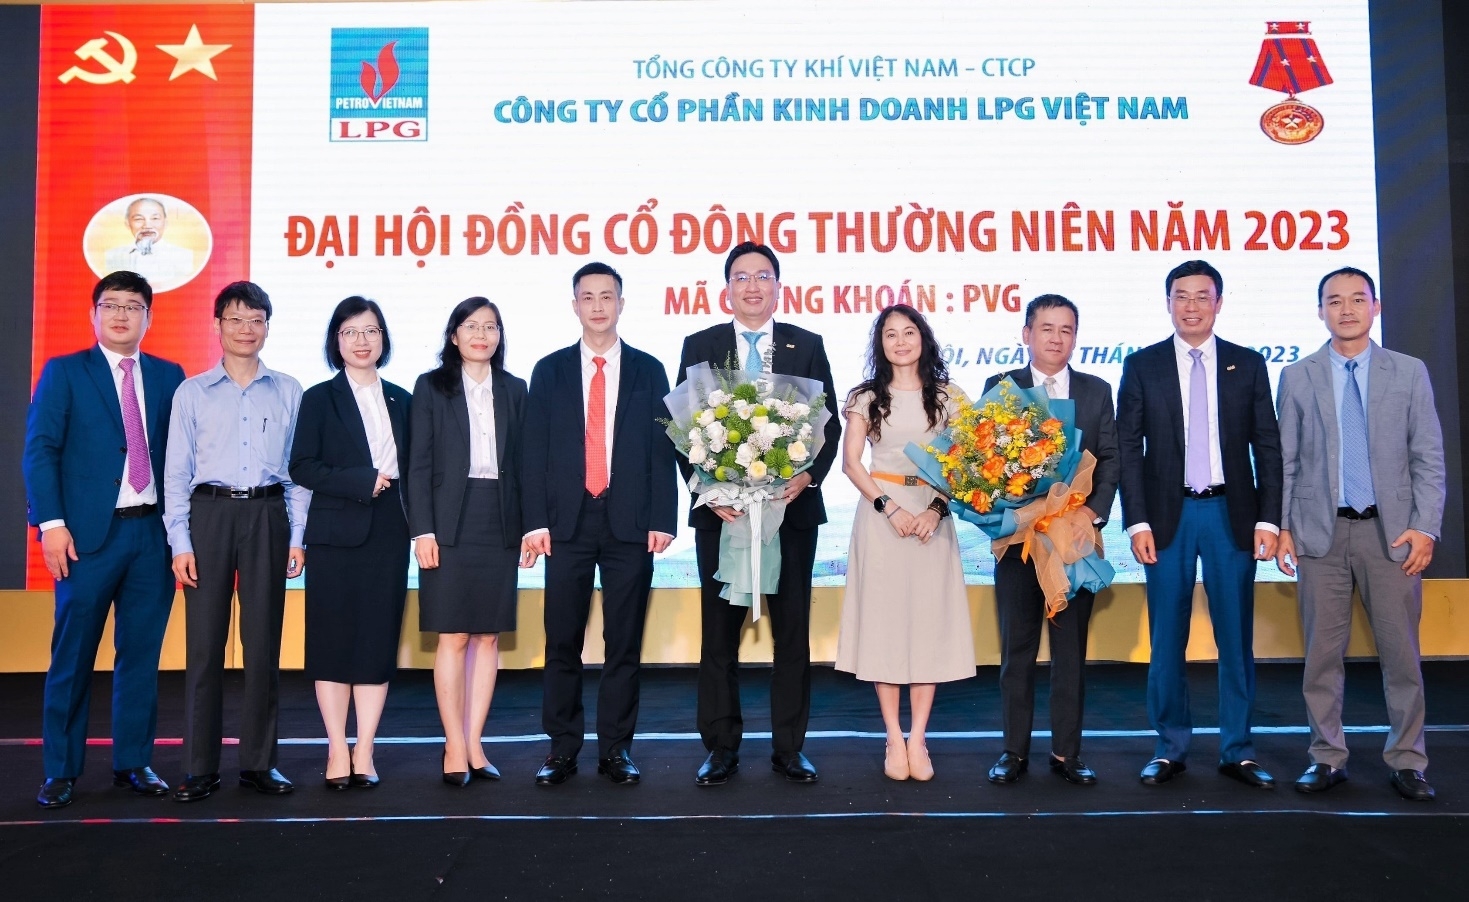 Lãnh đạo Tổng Công ty Khí Việt Nam chúc mừng Đại hội đồng cổ đông thường niên năm 2023 của PV GAS LPG thành công tốt đẹp.